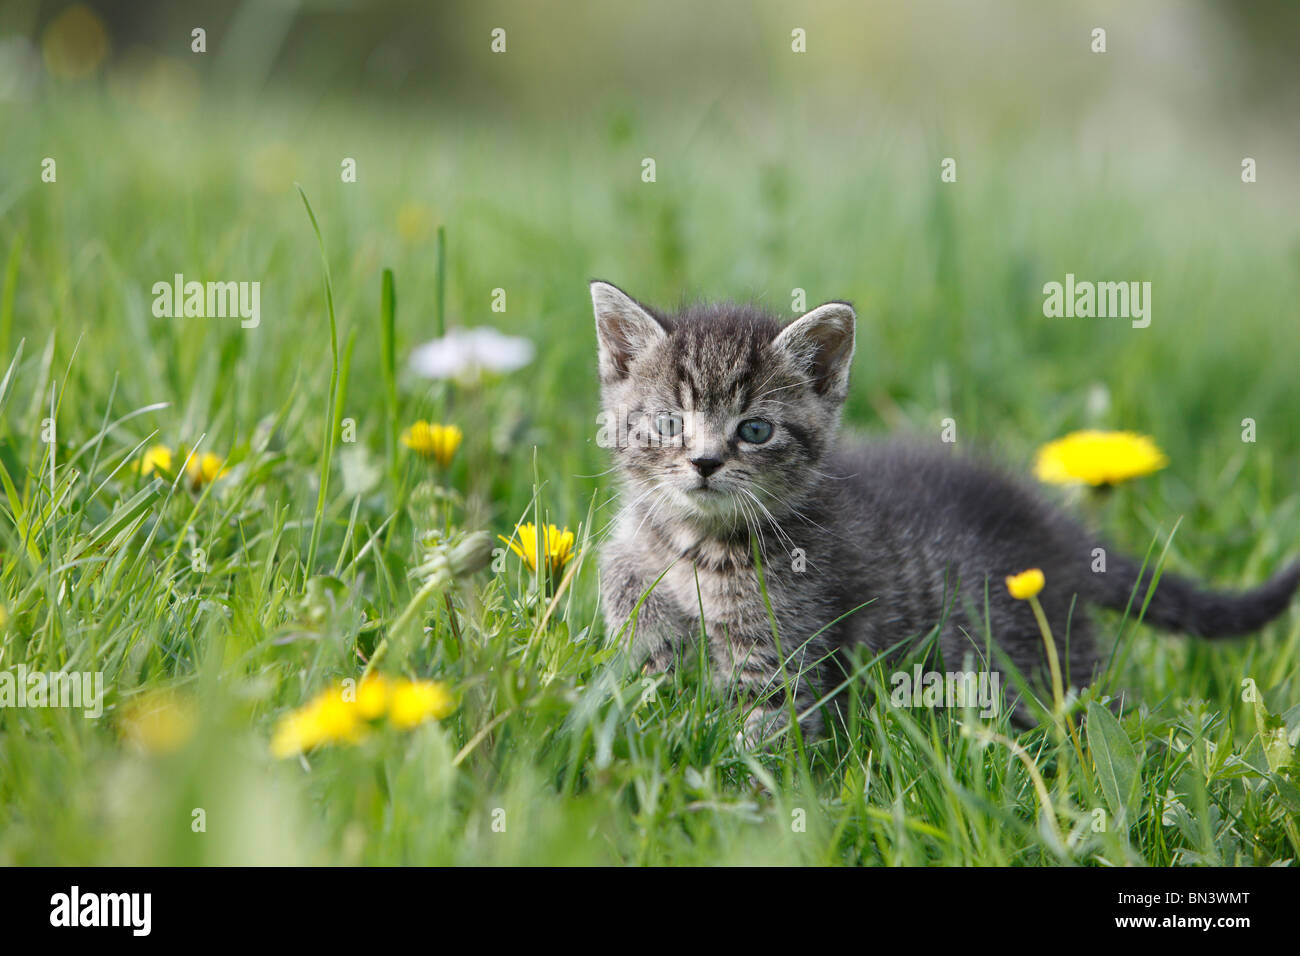 domestic cat, house cat, European Shorthair (Felis silvestris f. catus), 5 weeks old kitten in a dandelion meadow, Germany Stock Photo